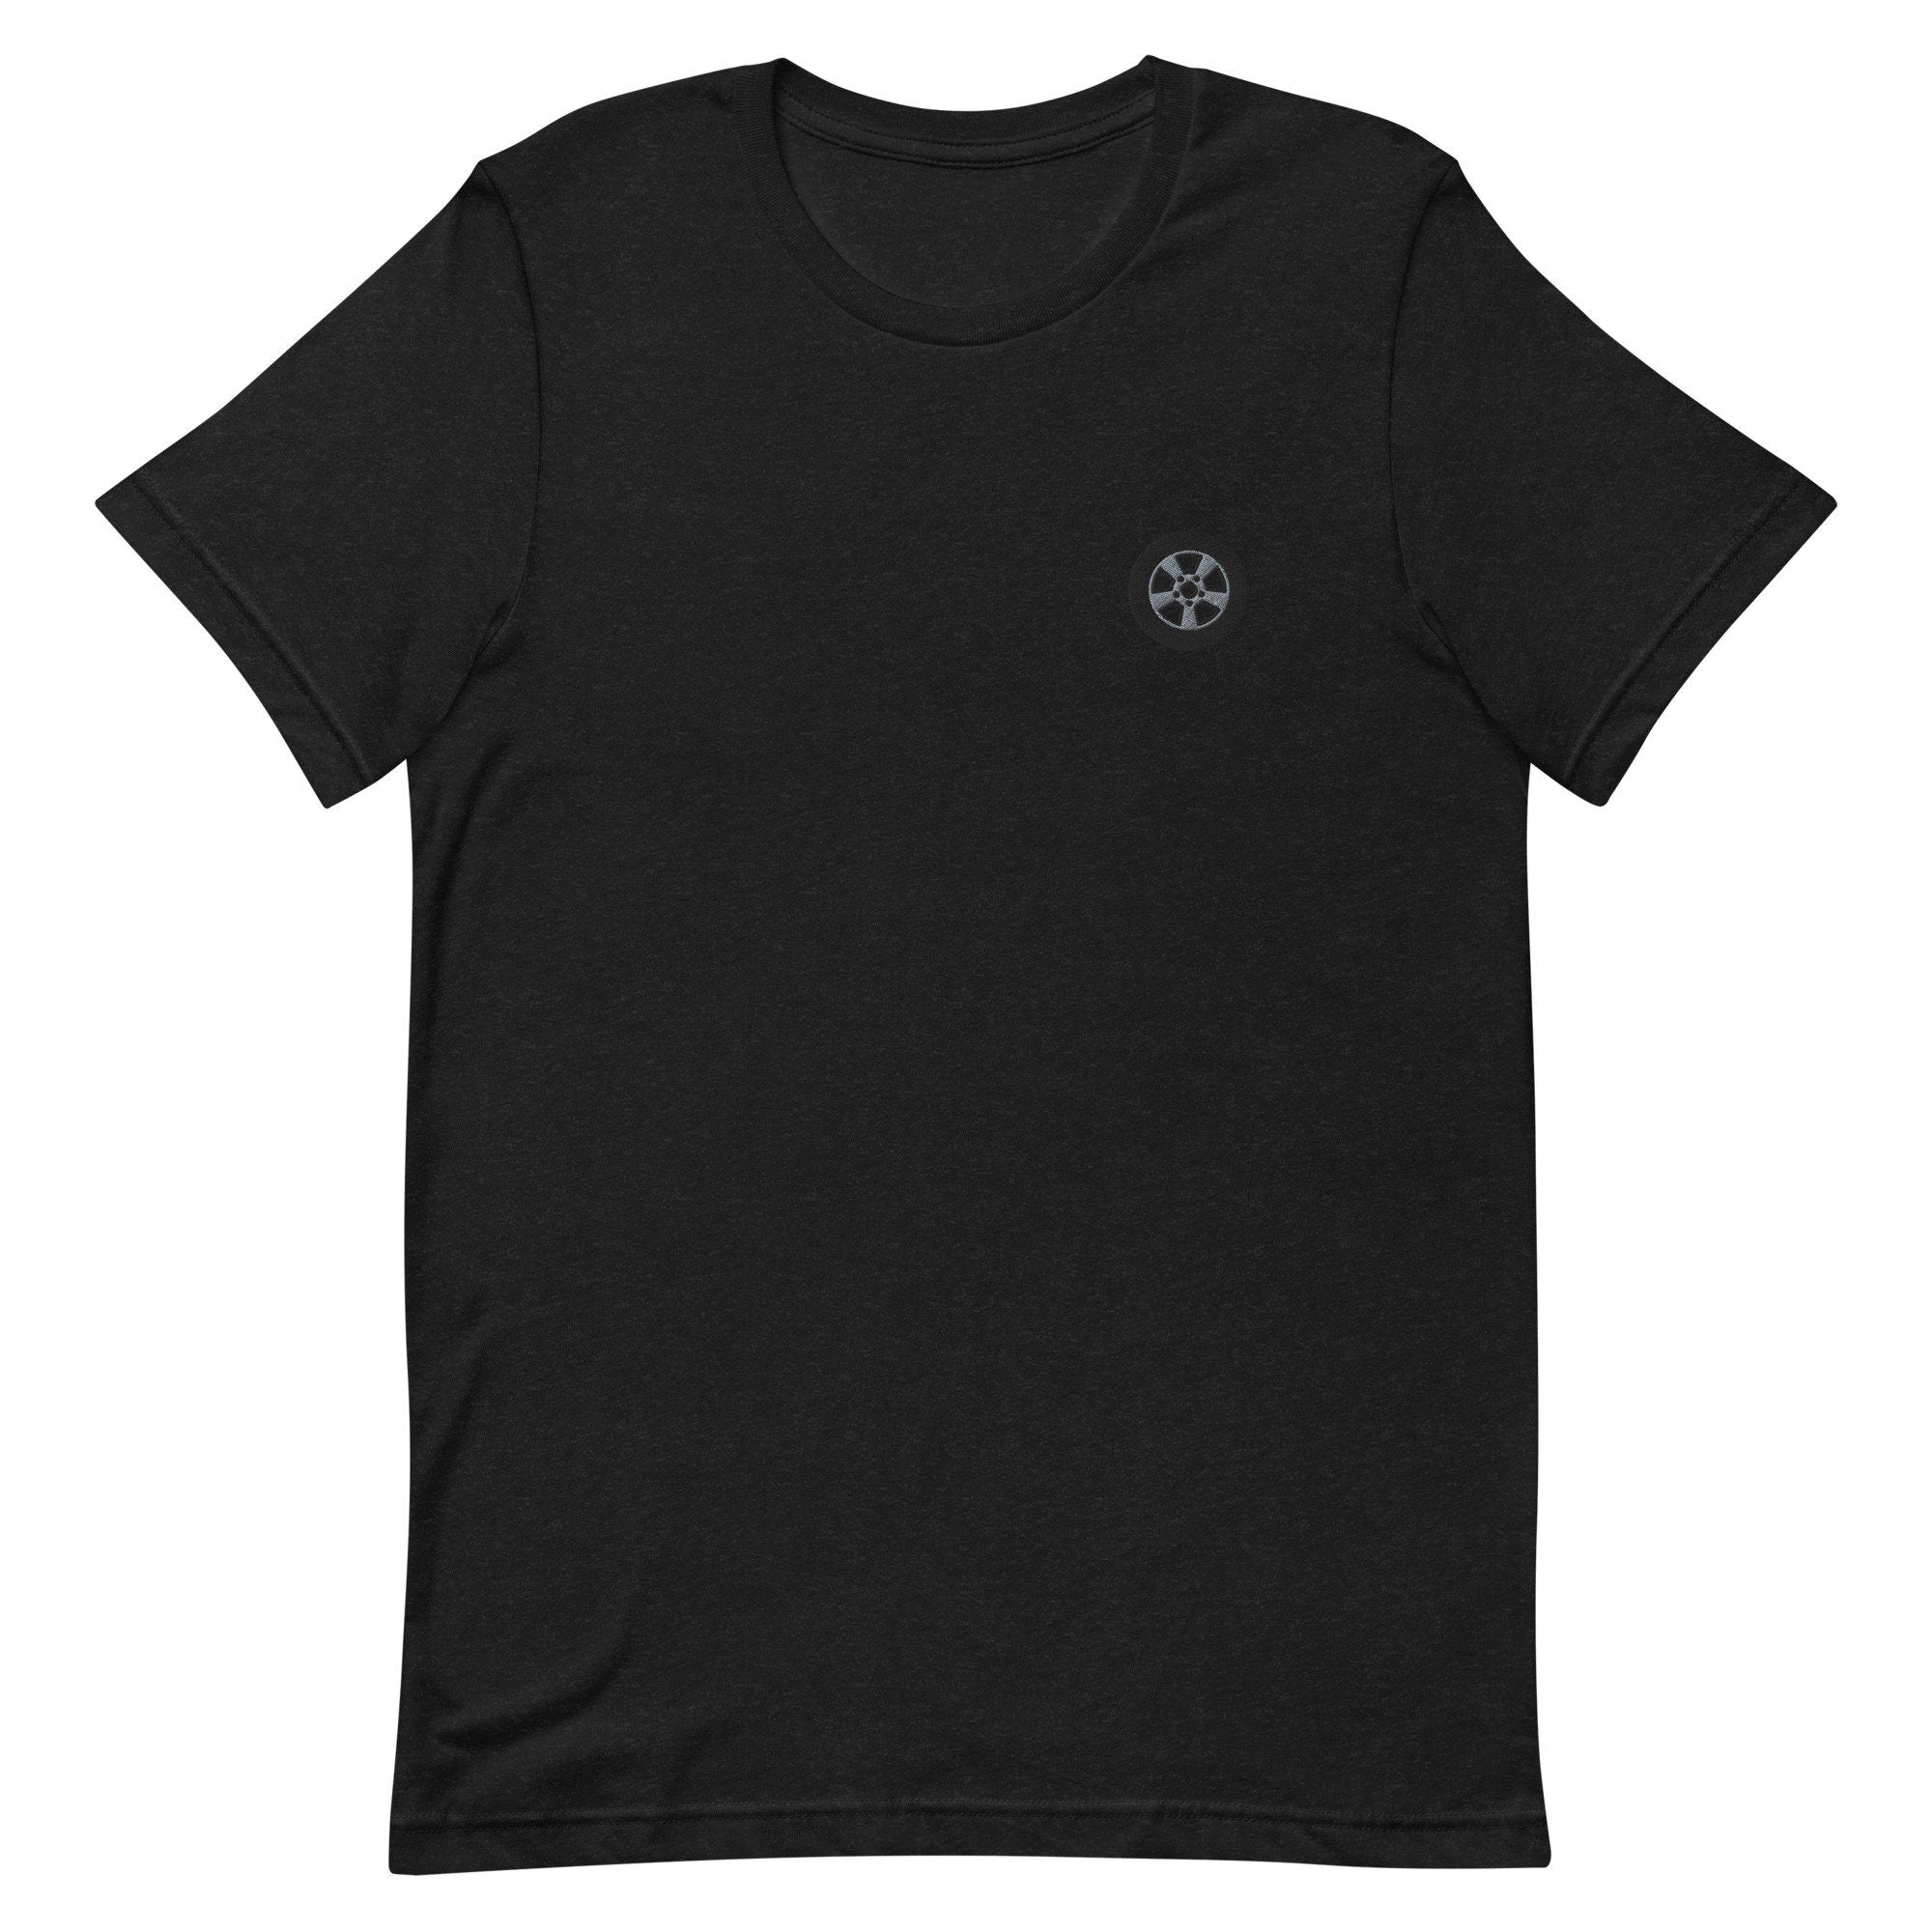 Tire Premium Men's T-Shirt, Embroidered Men's T-Shirt Gift for Boyfriend, Men's Short Sleeve Shirt - Multiple Colors